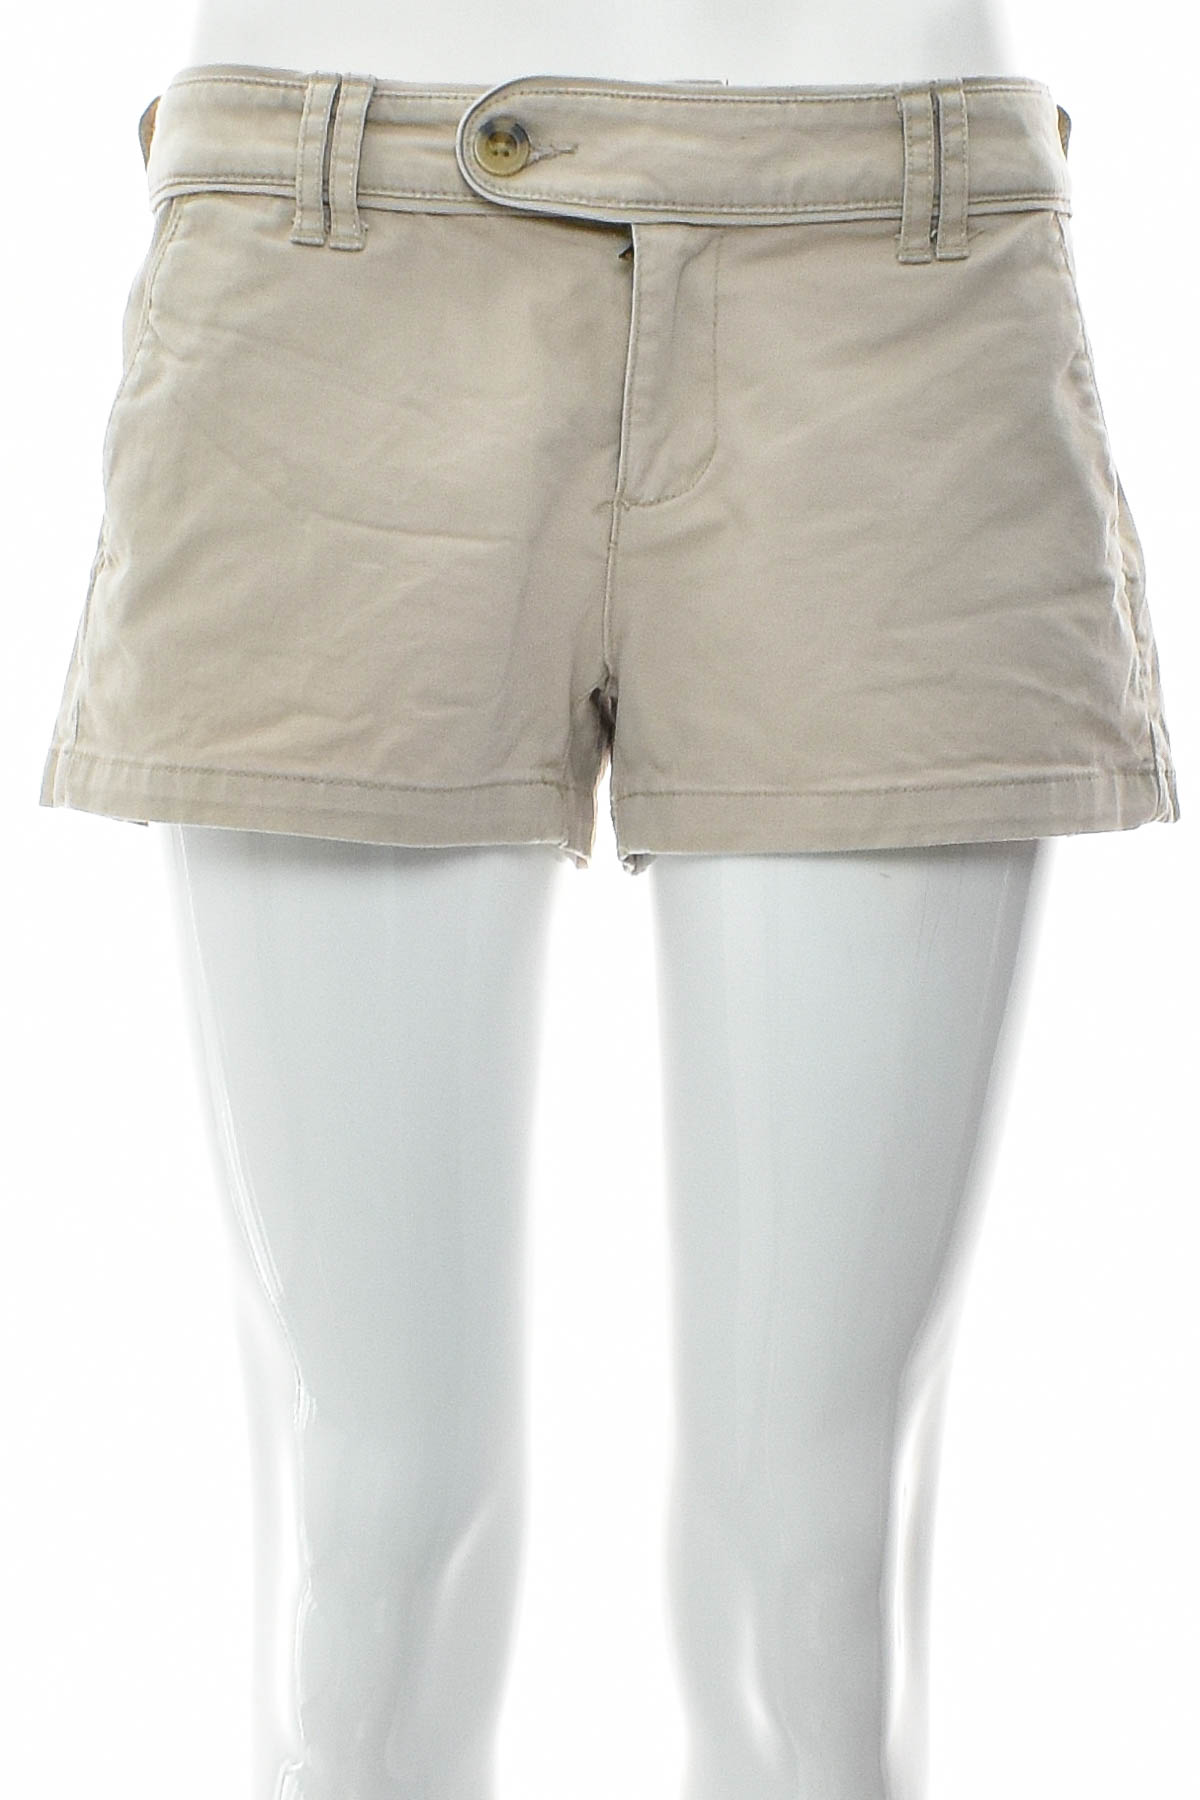 Γυναικείο κοντό παντελόνι - ARIZONA JEAN CO - 0